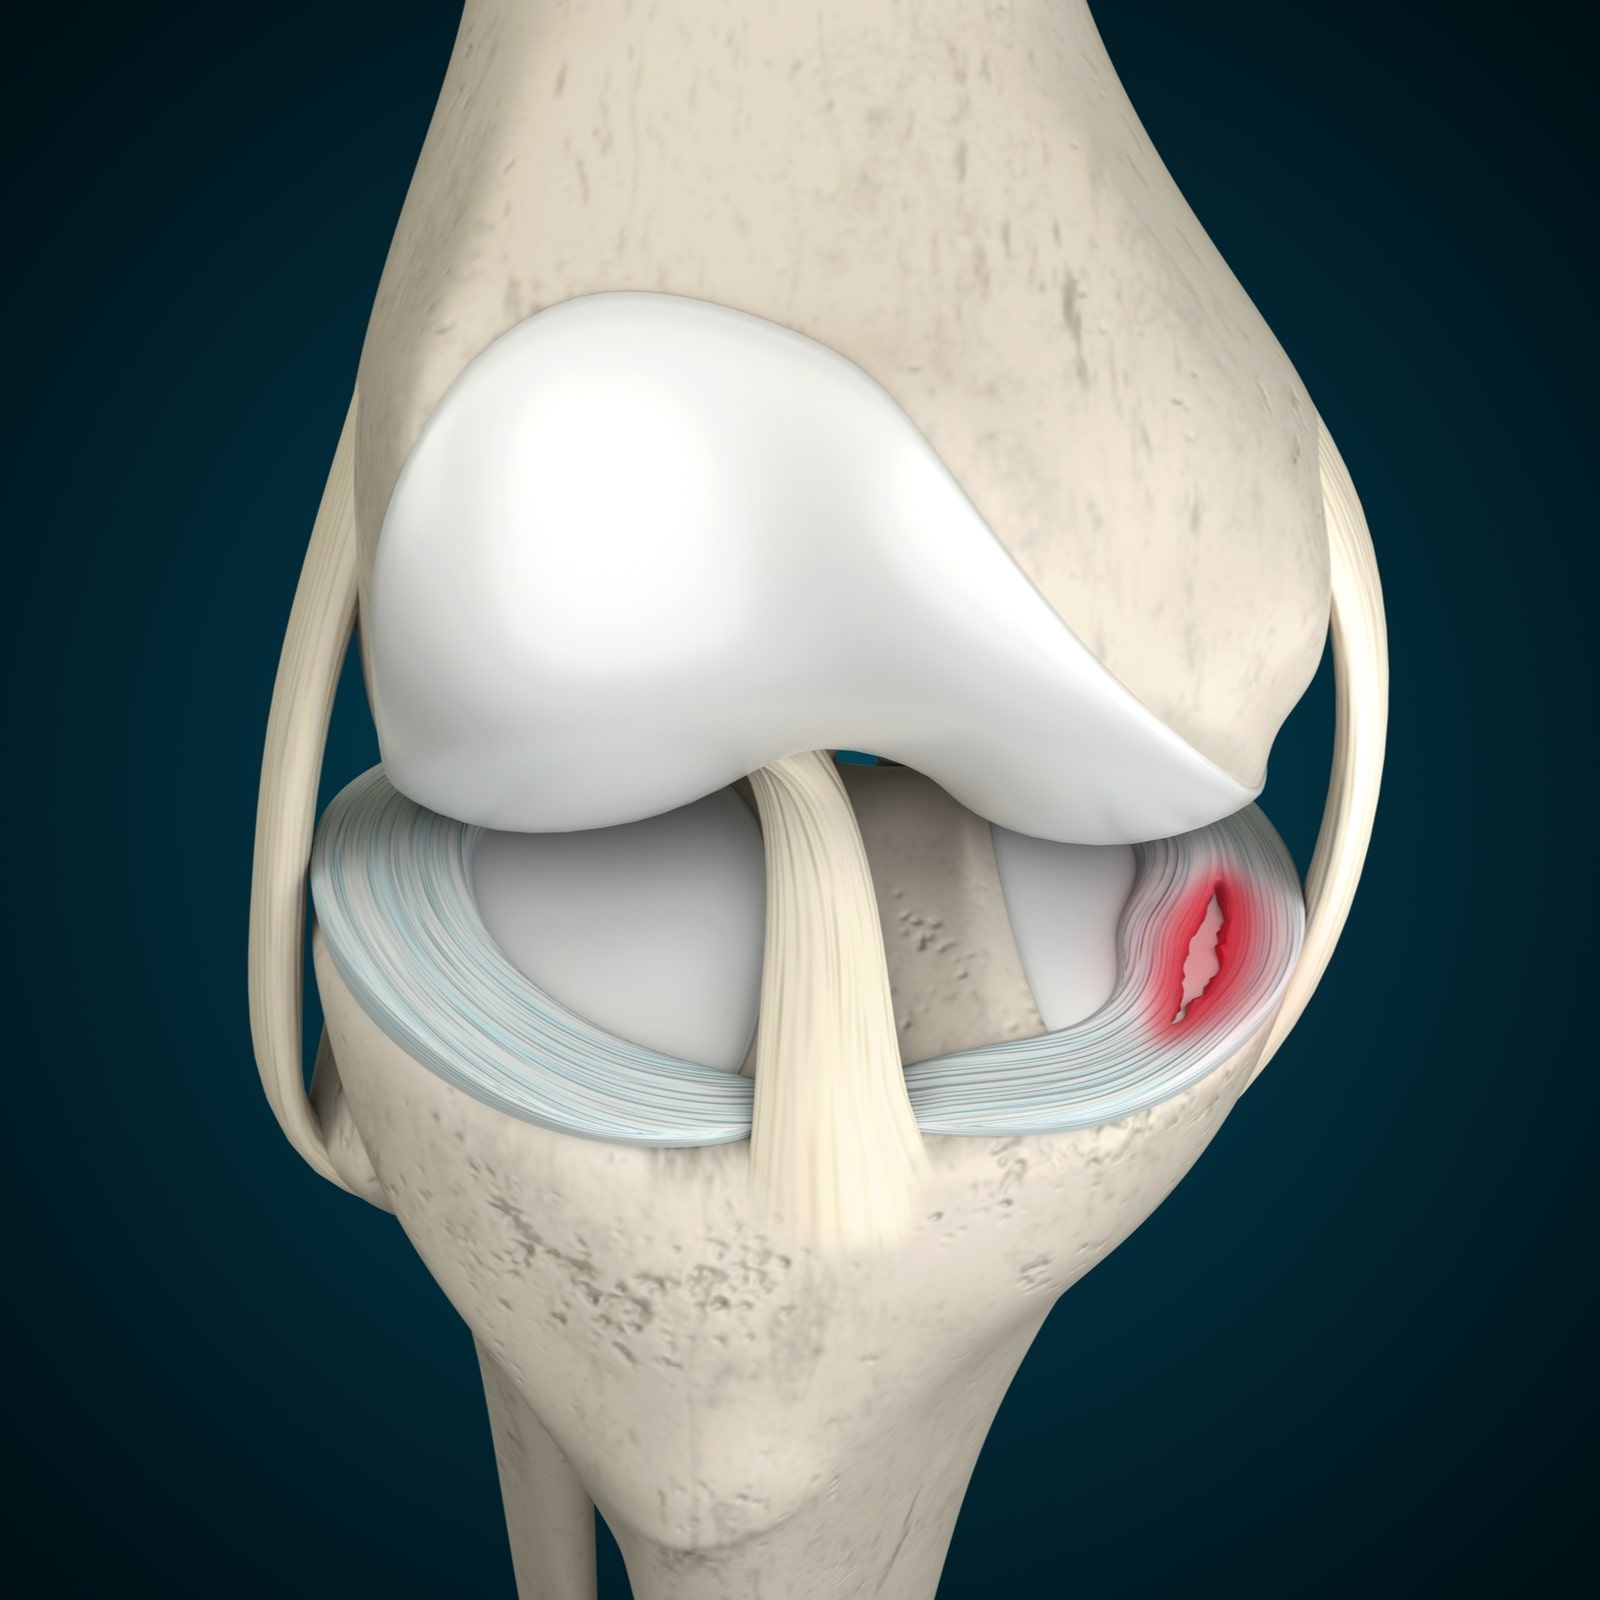 Meniscus Tear 3D Rendering, Knee Anatomy, Knee Pain